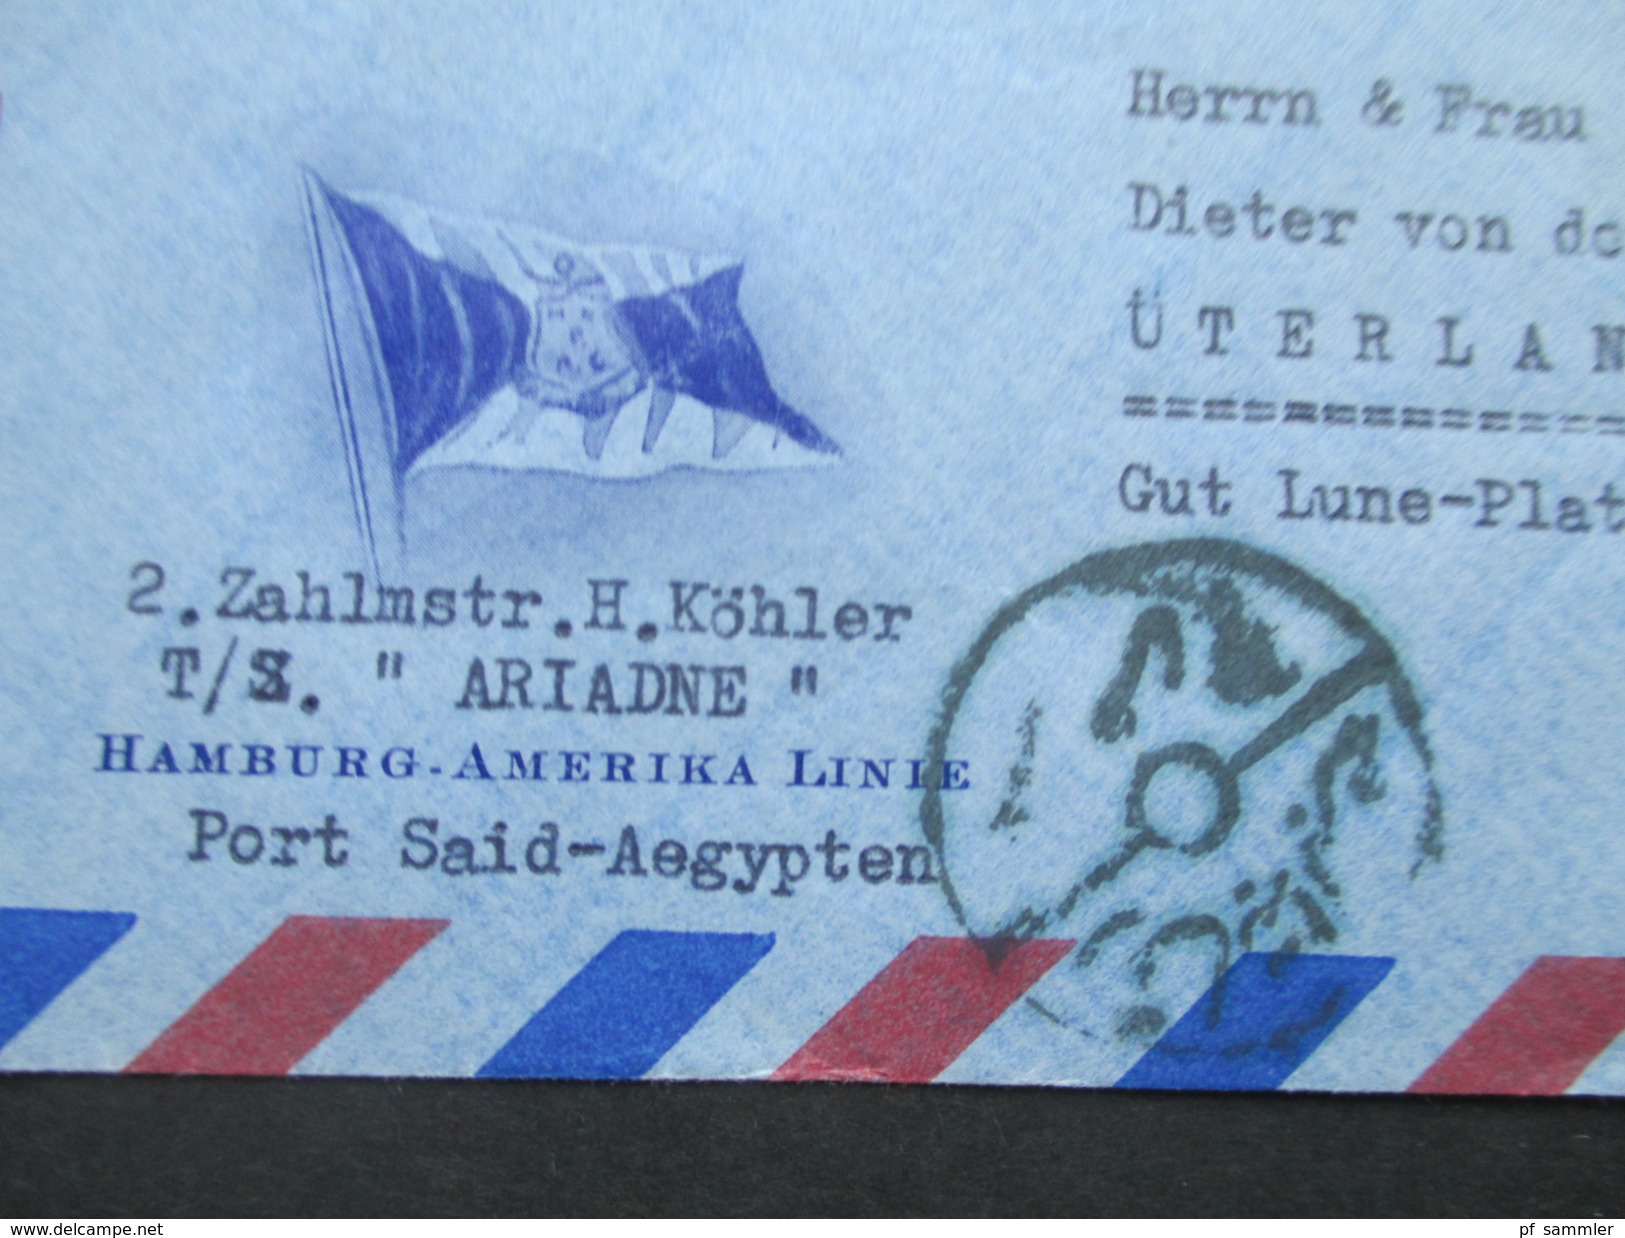 Ägypten 1950er Jahre Luftpostbrief / Schiffspost Hamburg - Amerika Linie. TS Ariadne. Nach Üterlande.Interessanter Beleg - Covers & Documents